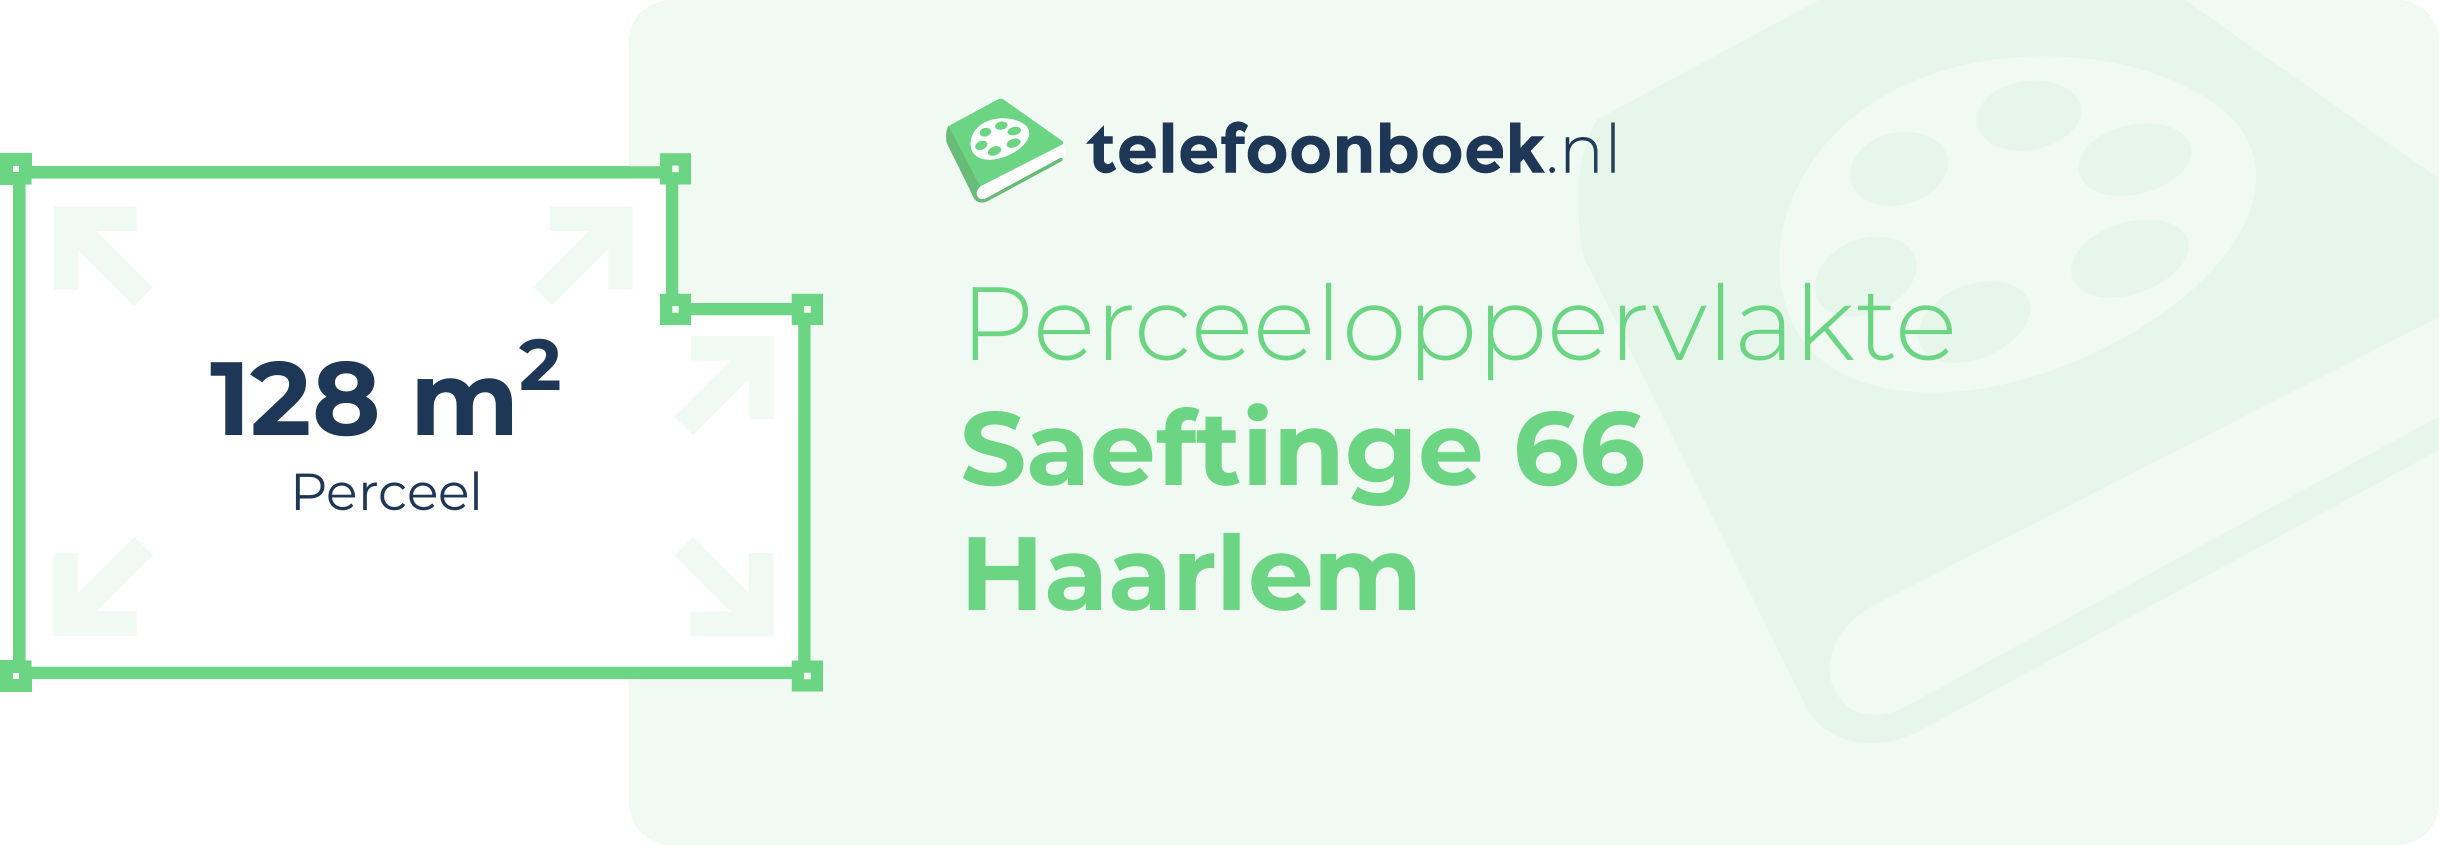 Perceeloppervlakte Saeftinge 66 Haarlem